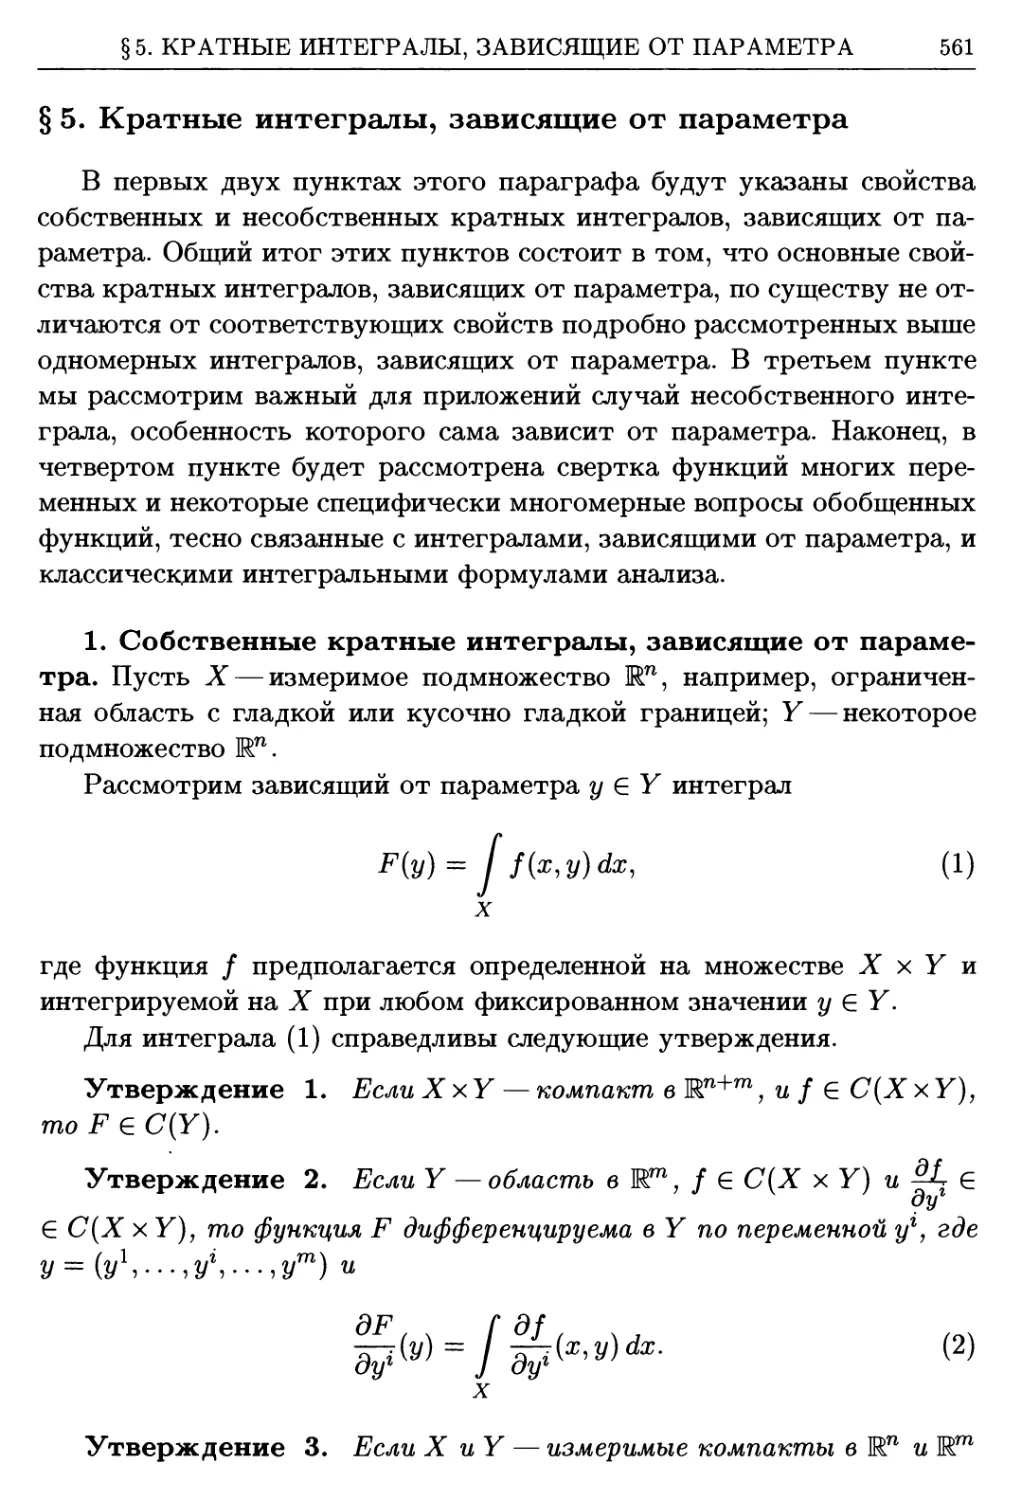 §5. Кратные интегралы, зависящие от параметра